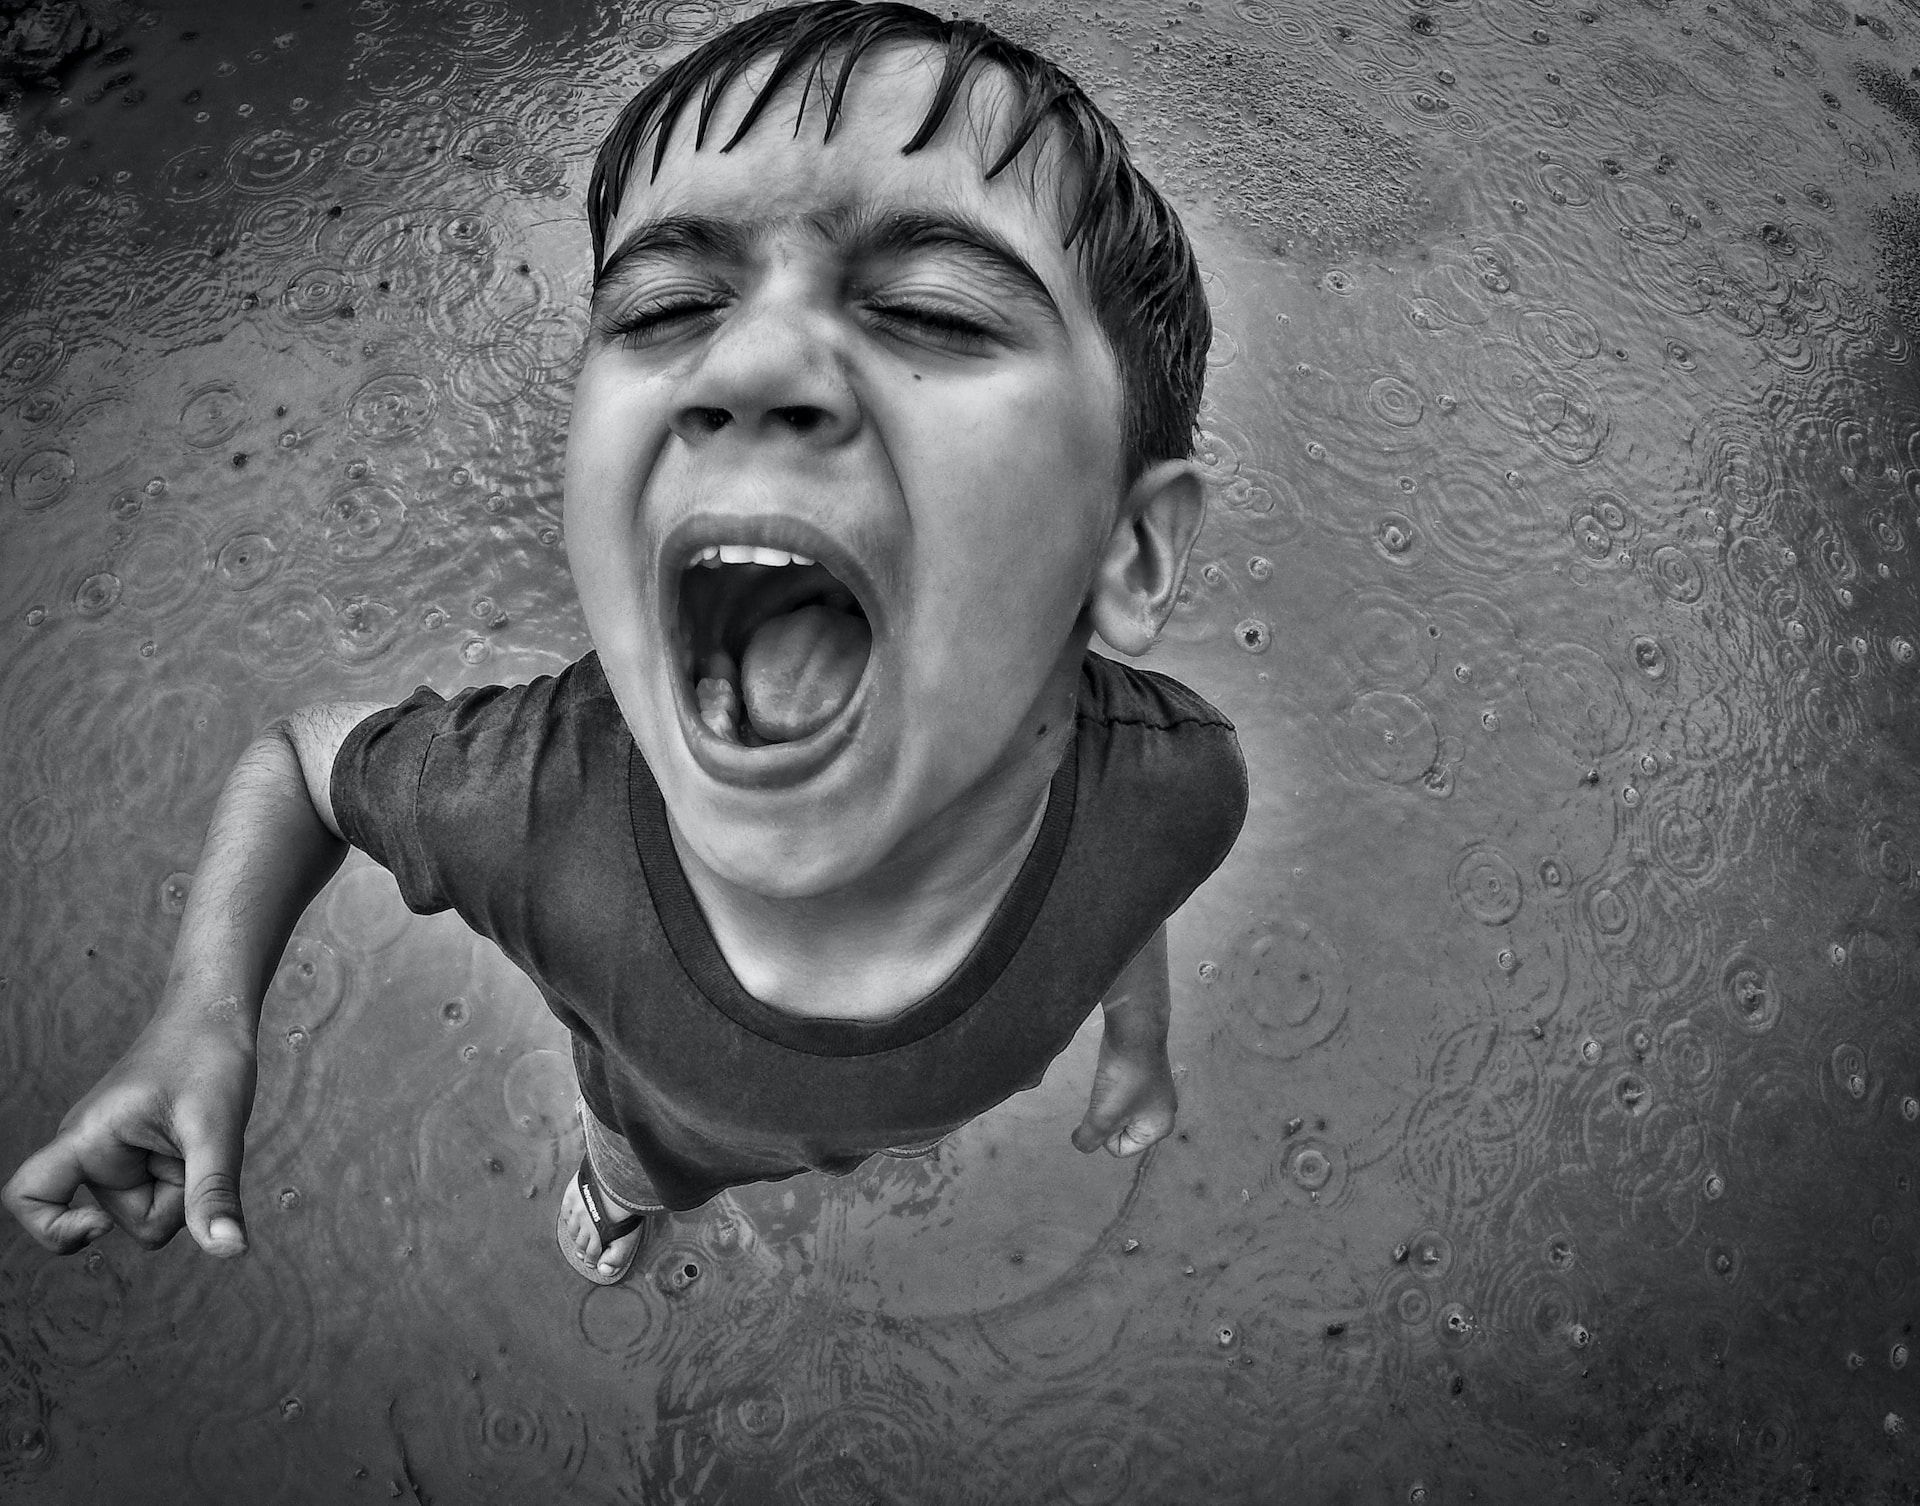 Un jeune garçon avec la bouche ouverte dans l’eau - Photo de Tapish sur https://unsplash.com/fr/photos/HAdxvCvTXDw